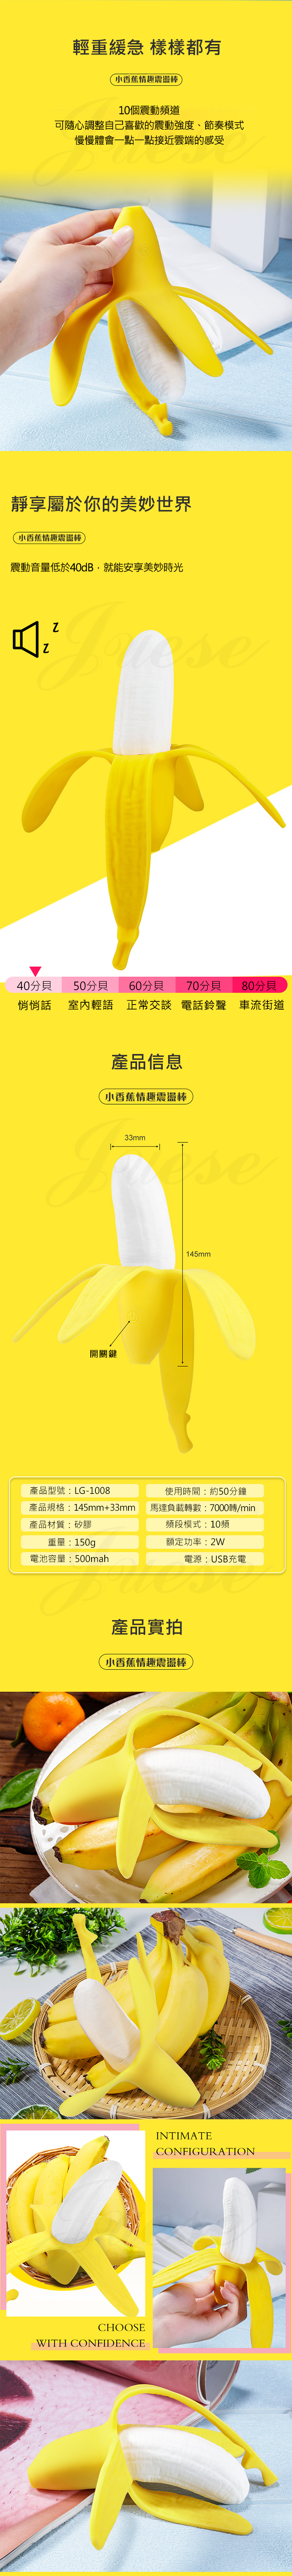 香蕉王子 10段變頻震動可愛香蕉矽膠老二棒